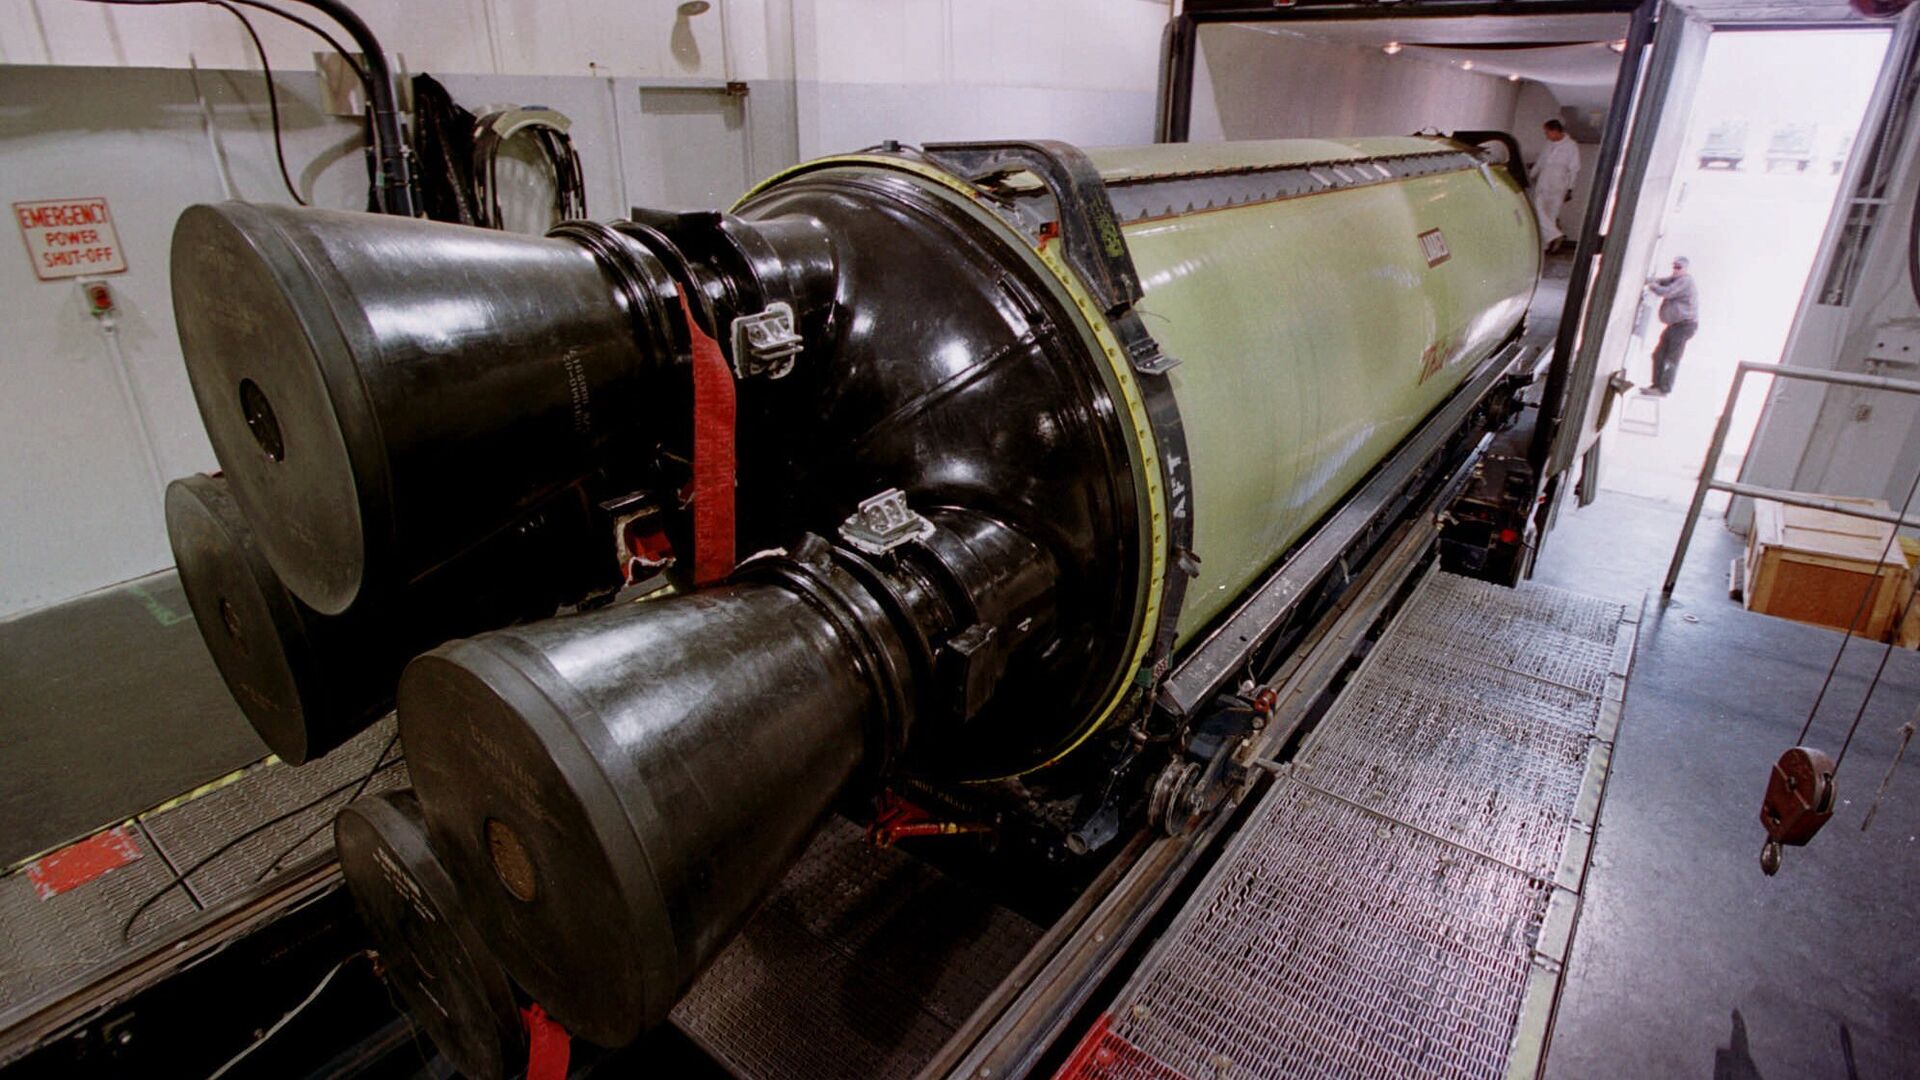 Погрузка межконтинентальной баллистической ракеты Minuteman III для перевозки на военную базу в штат Юта. 2002 год  - РИА Новости, 1920, 26.10.2020